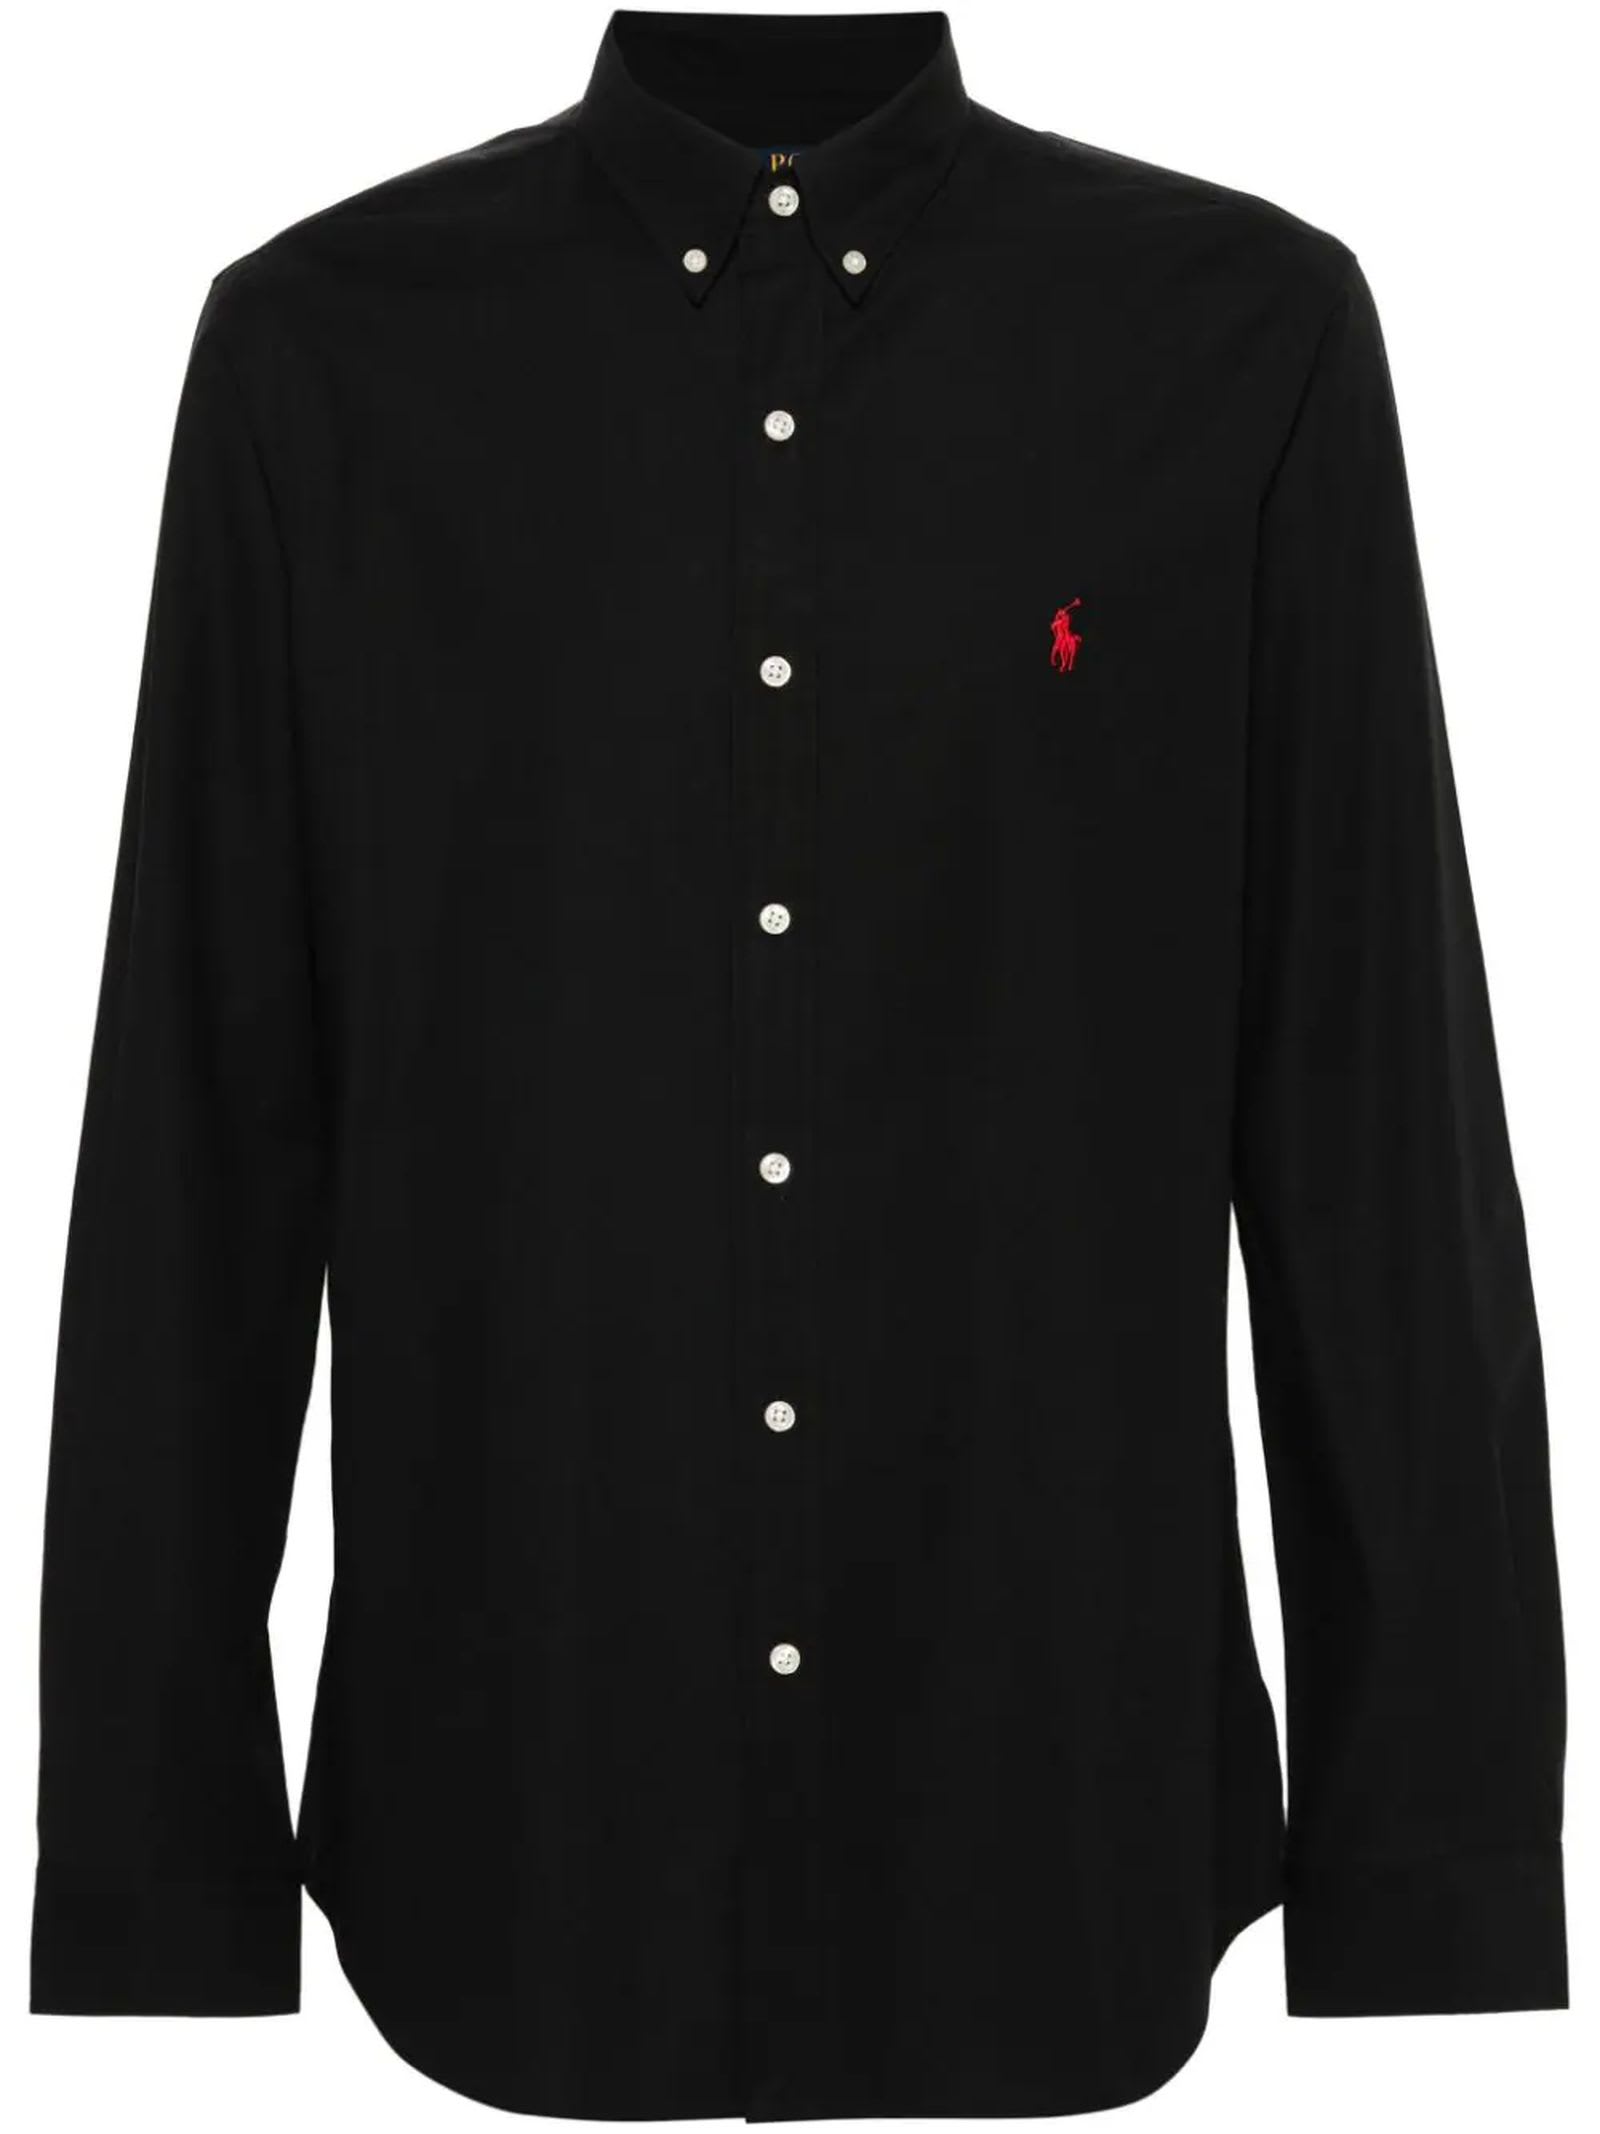 Shop Ralph Lauren Black Cotton Blend Shirt